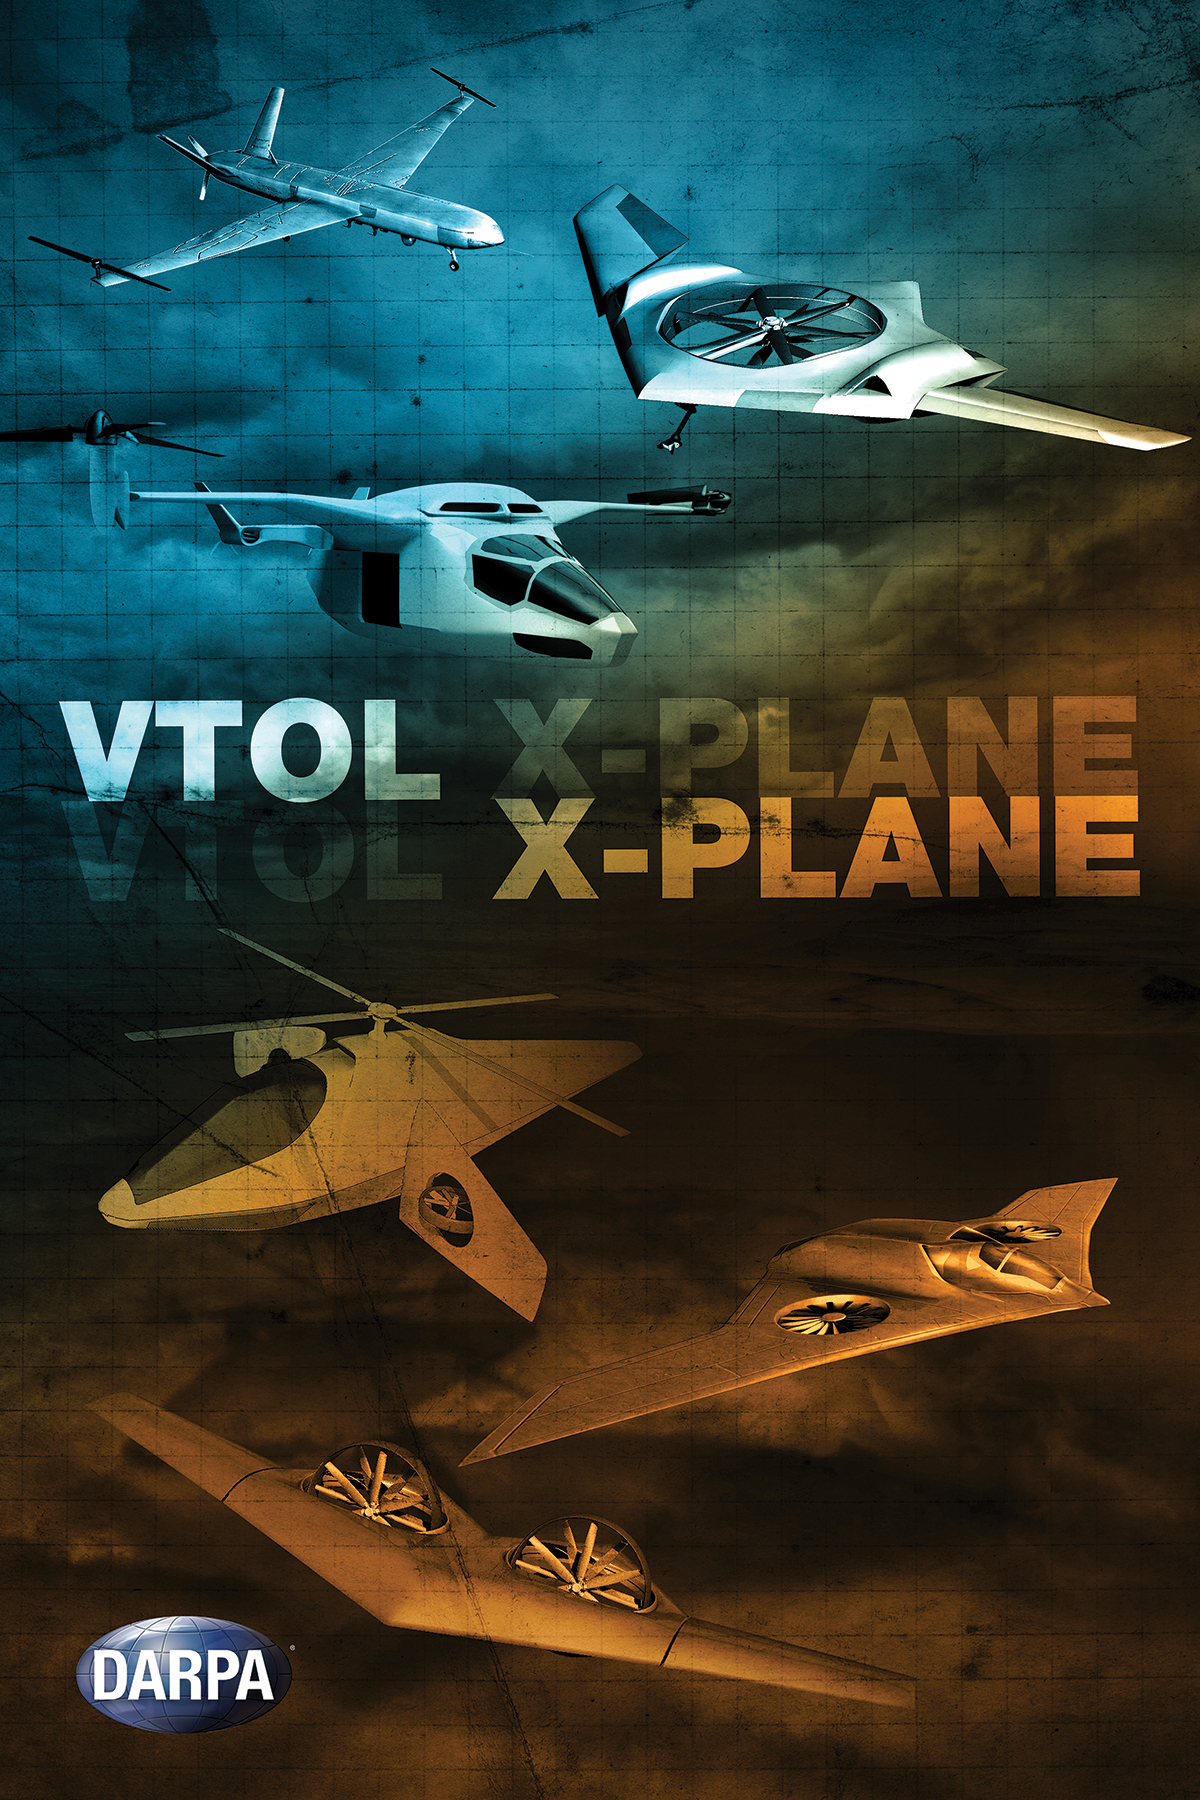 VTOL-X-Plane-Darpa